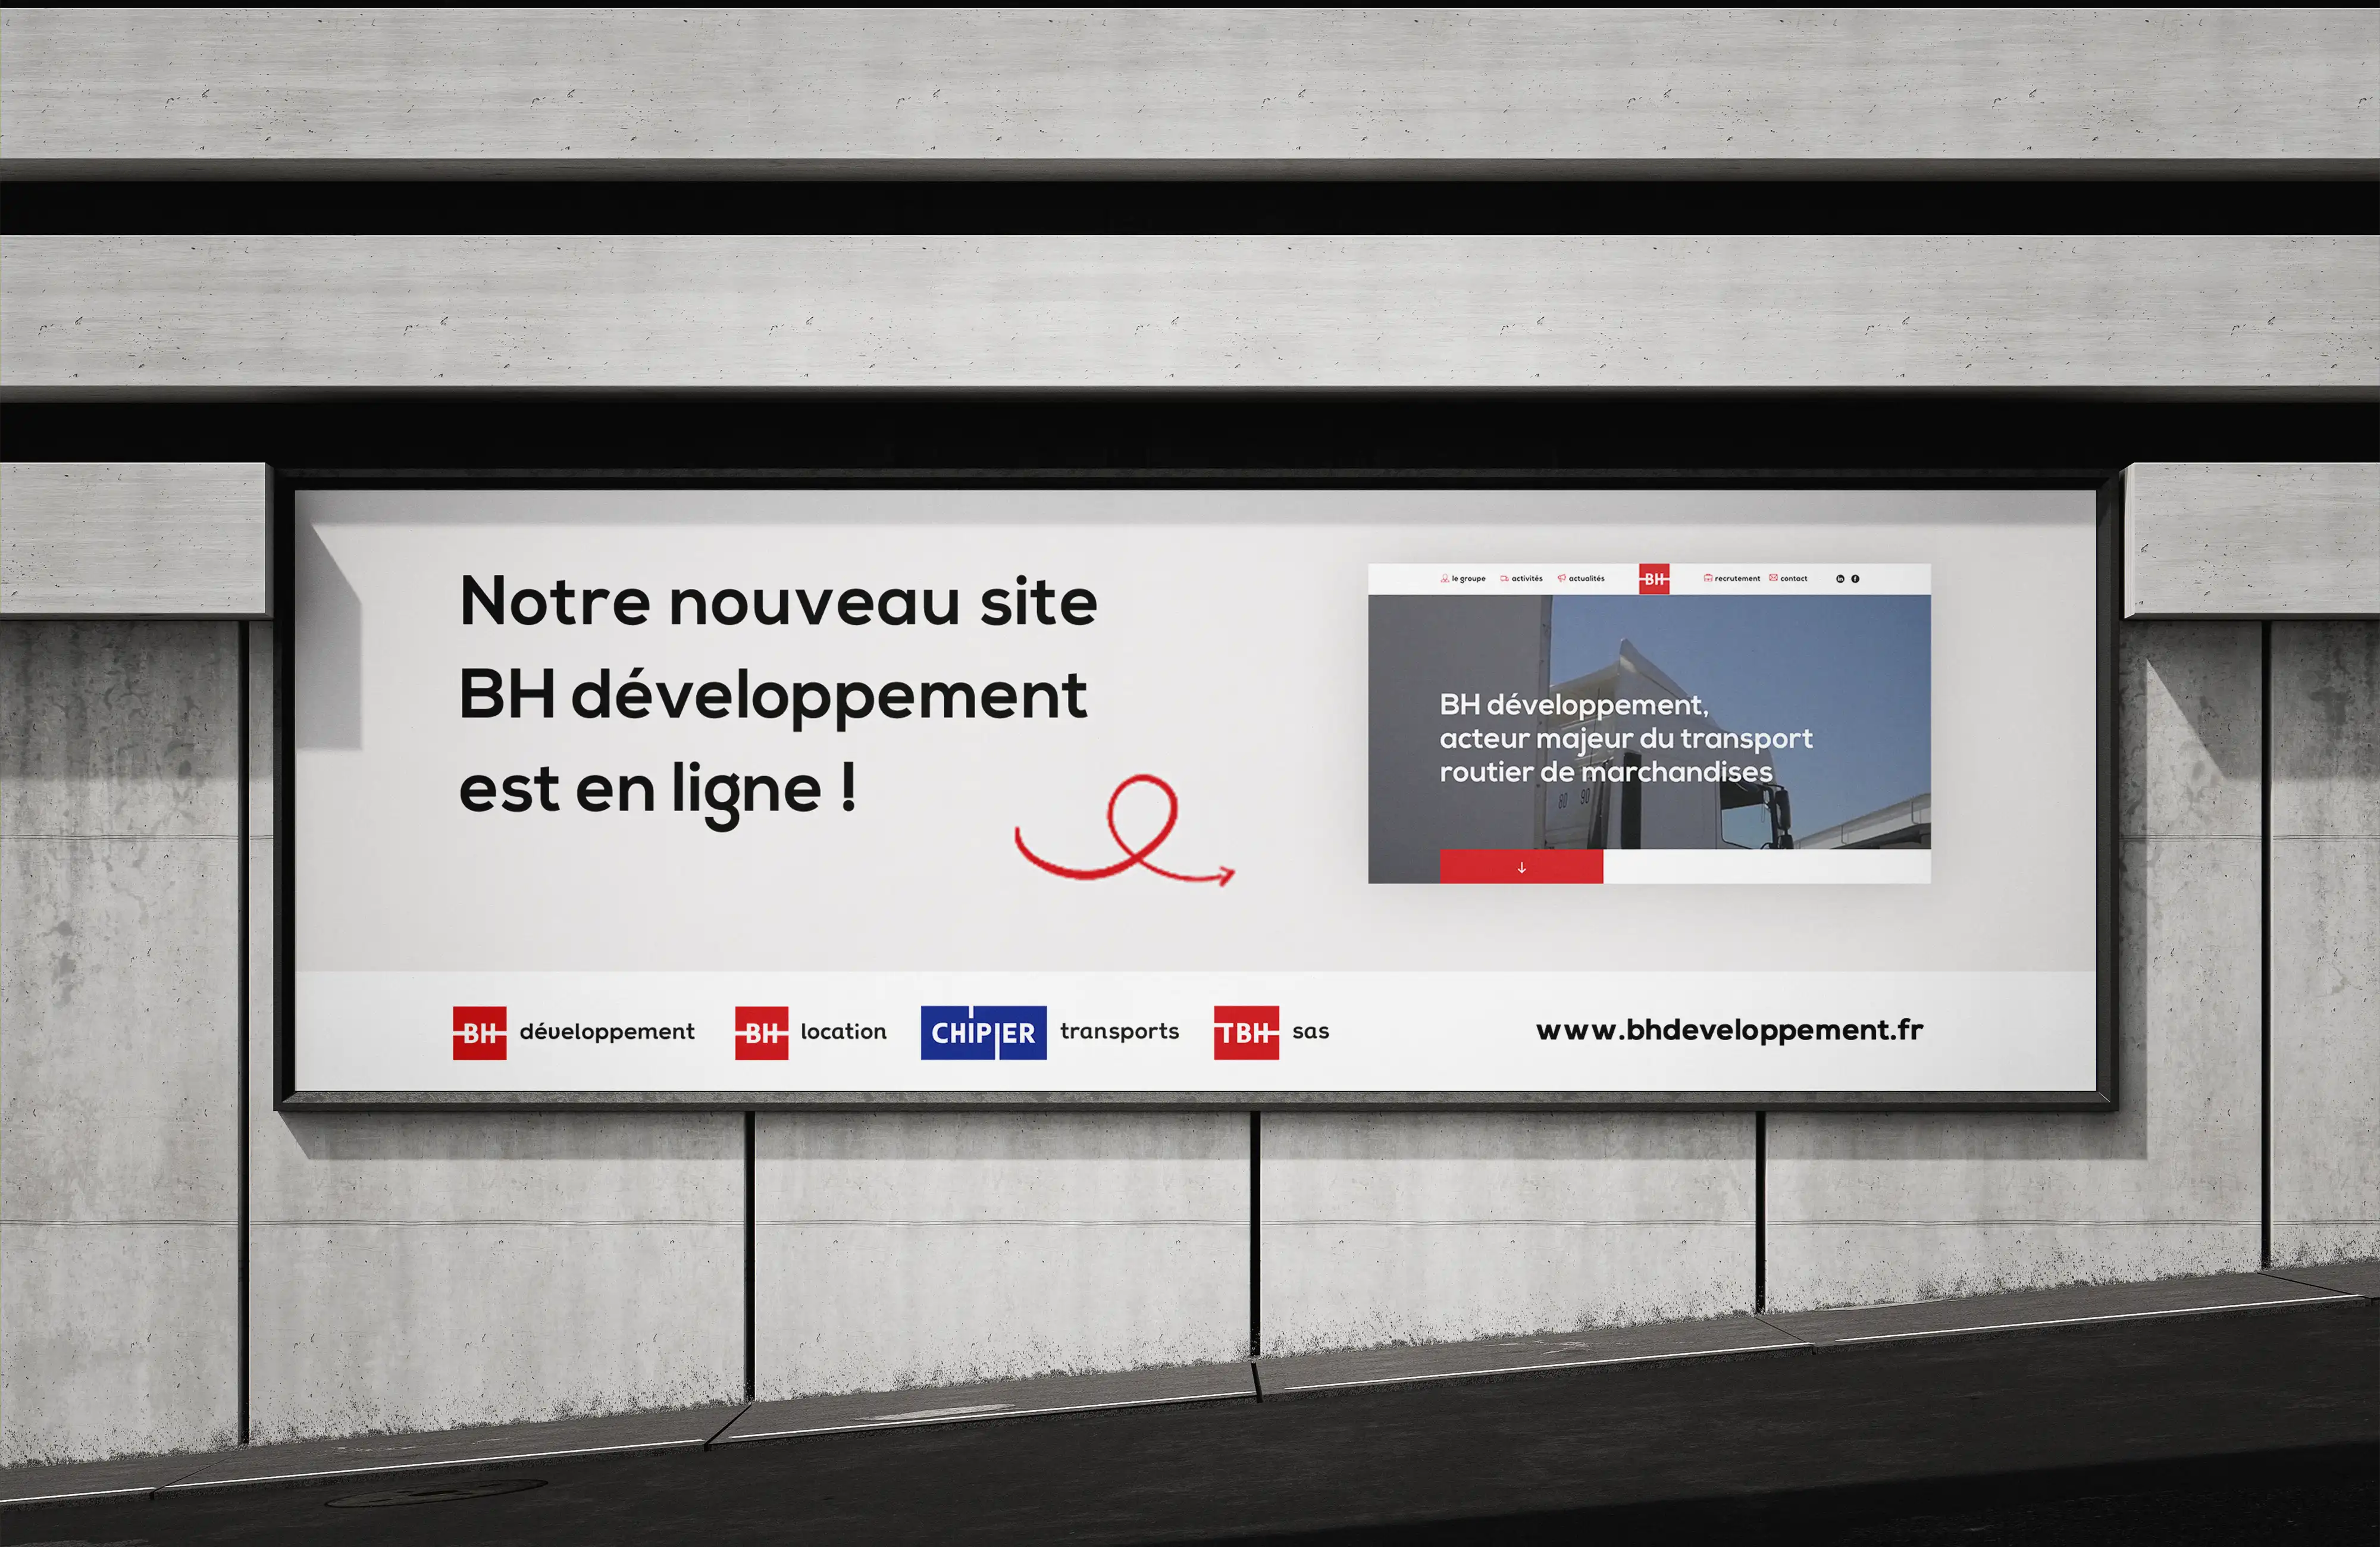 Panneau publicité présentant le nouveau site internet BH développement / BH groupe